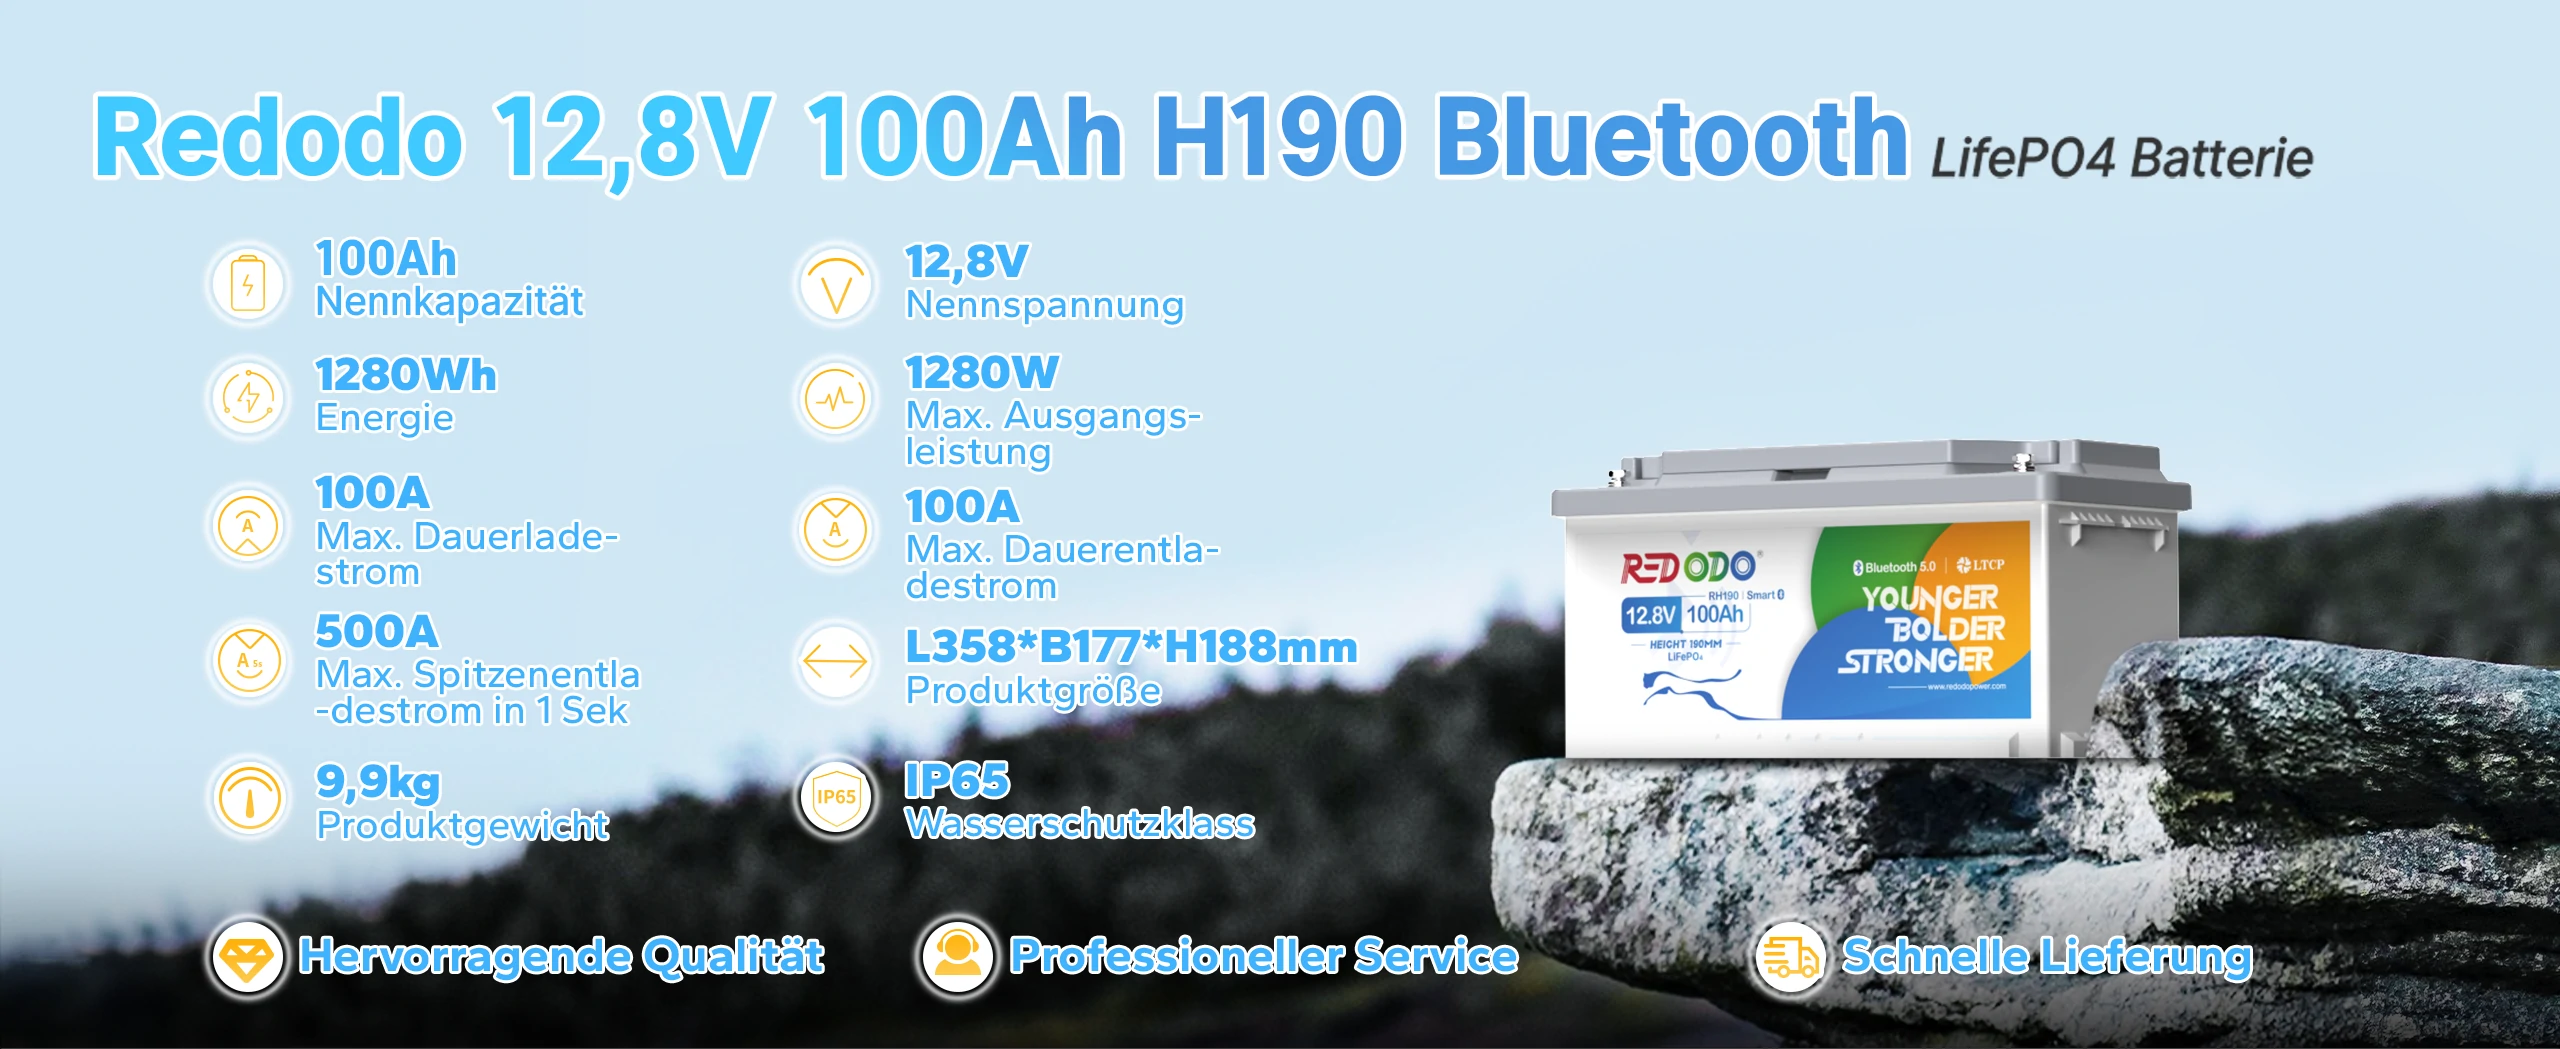 Redodo-LiFePO4-12V-100Ah-H190-Lithium-Batterie-Mit-Bluetooth-für-Wohnmobil-Parameter